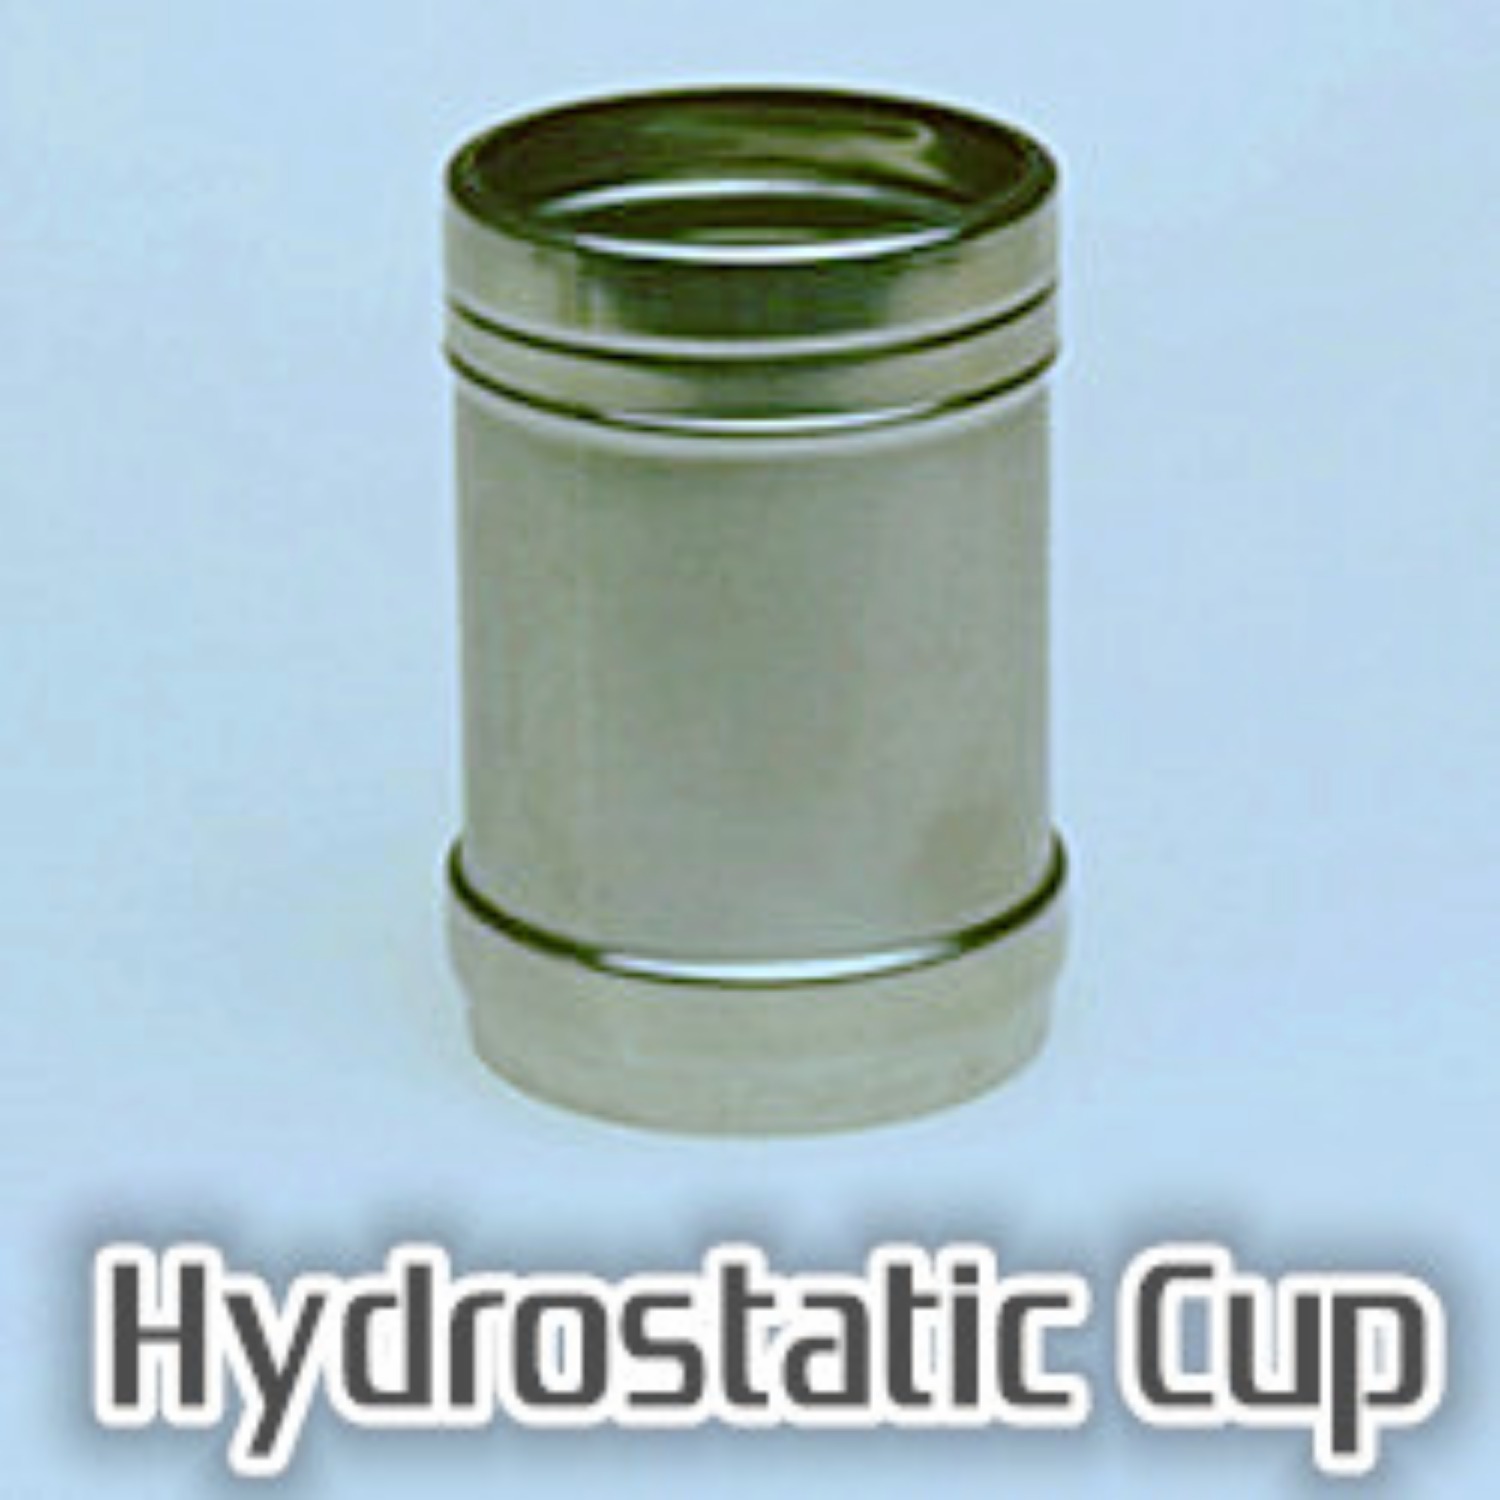 [하이드로스태틱 컵]Hydrostatic Cup - Stainless Steel 스테인레스컵 속의 물을 공중부양 시킵니다. 이해안가는 새로운 트릭을 경험하십시오.